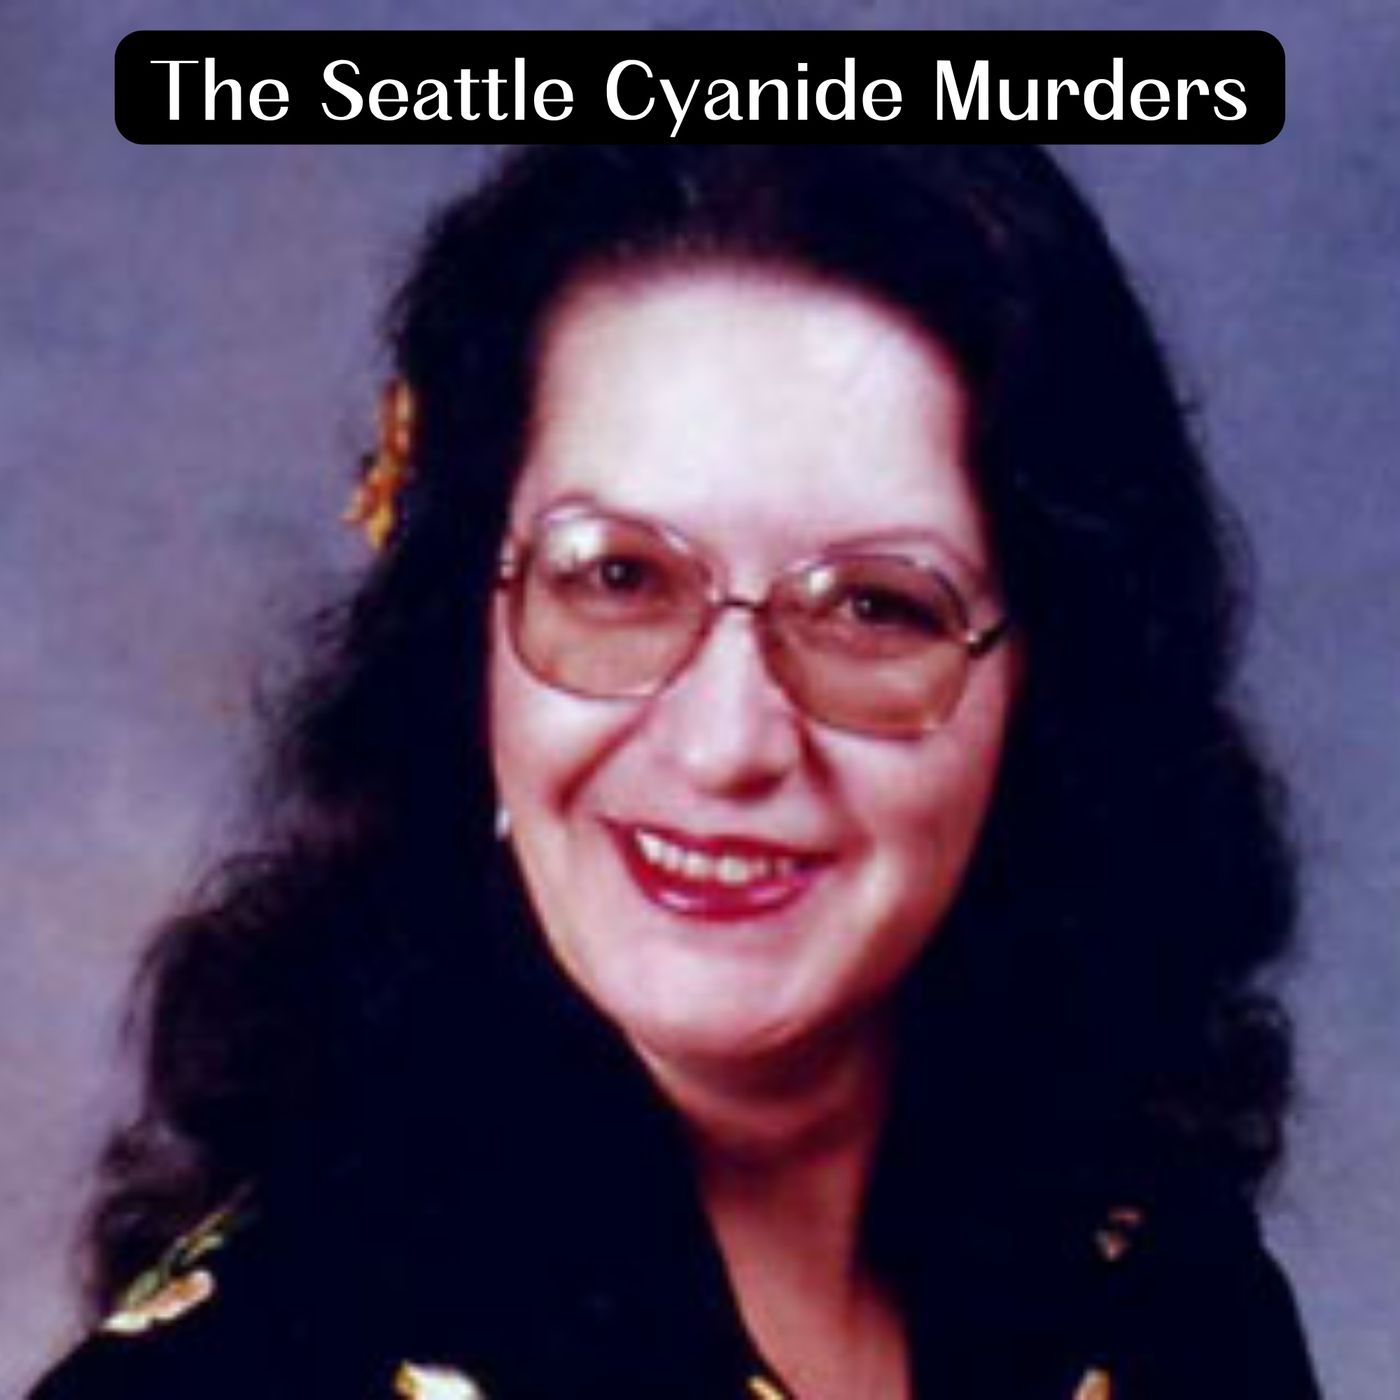 The Seattle Cyanide Murders